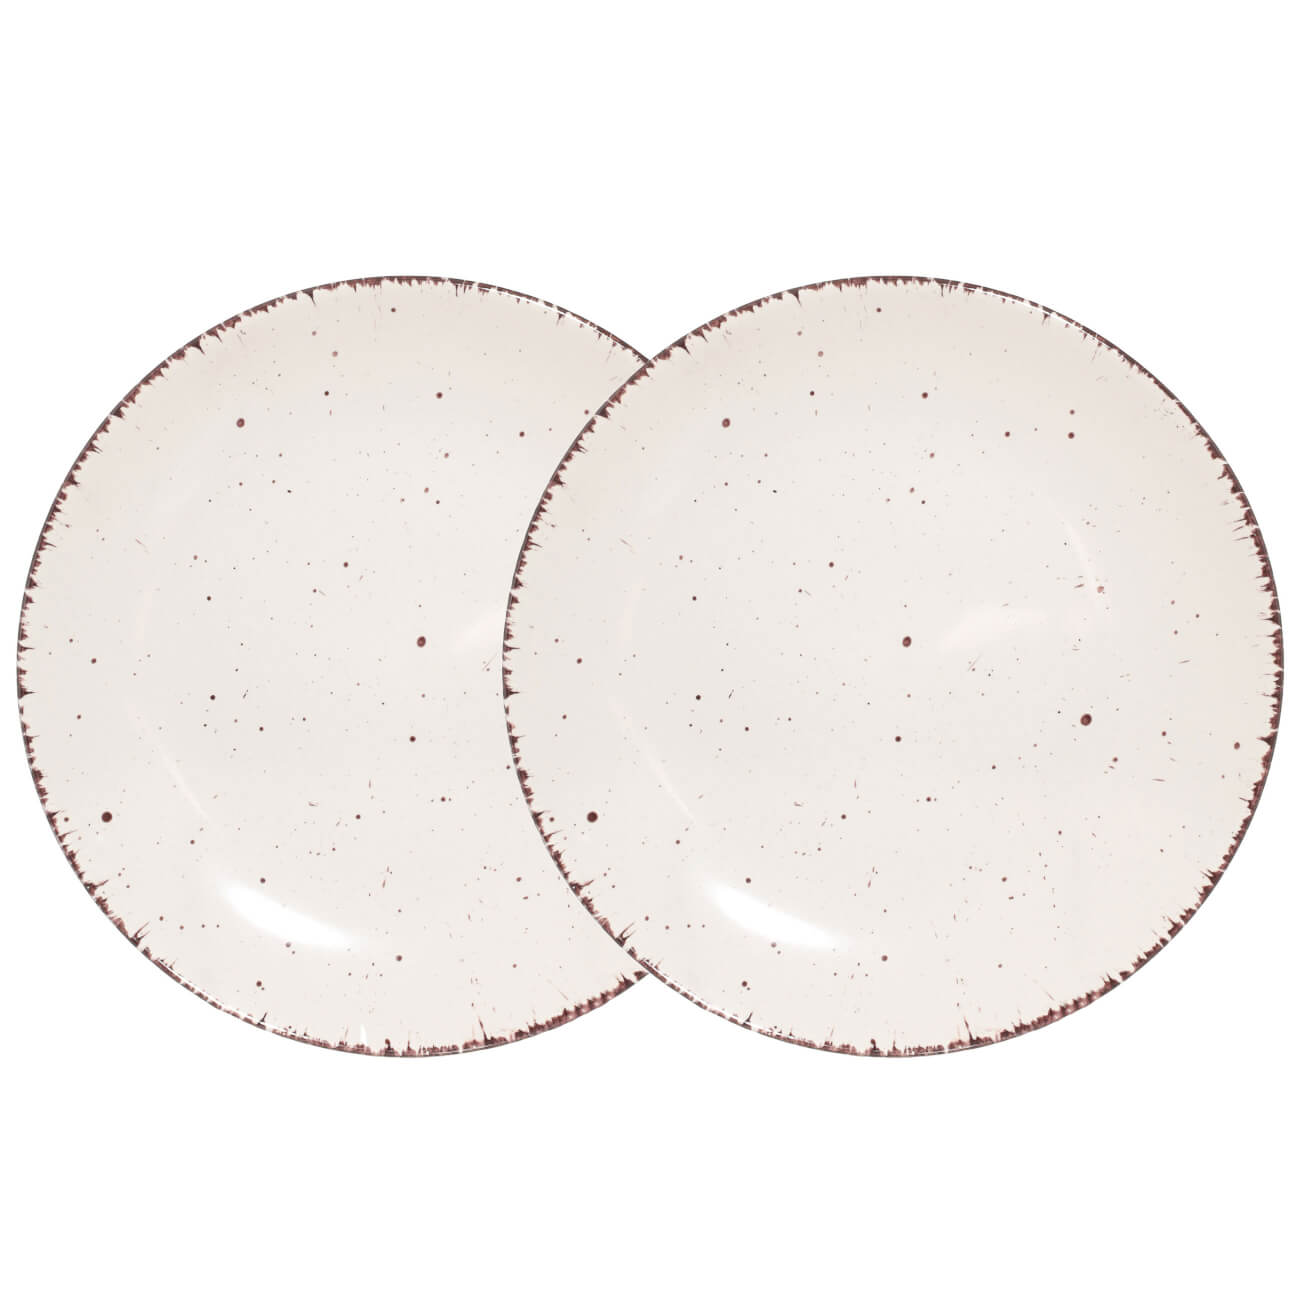 Тарелка закусочная, 21 см, 2 шт, керамика, бежевая, в крапинку, Speckled тарелка закусочная bronco sentiment 21 см серый арт 410 120